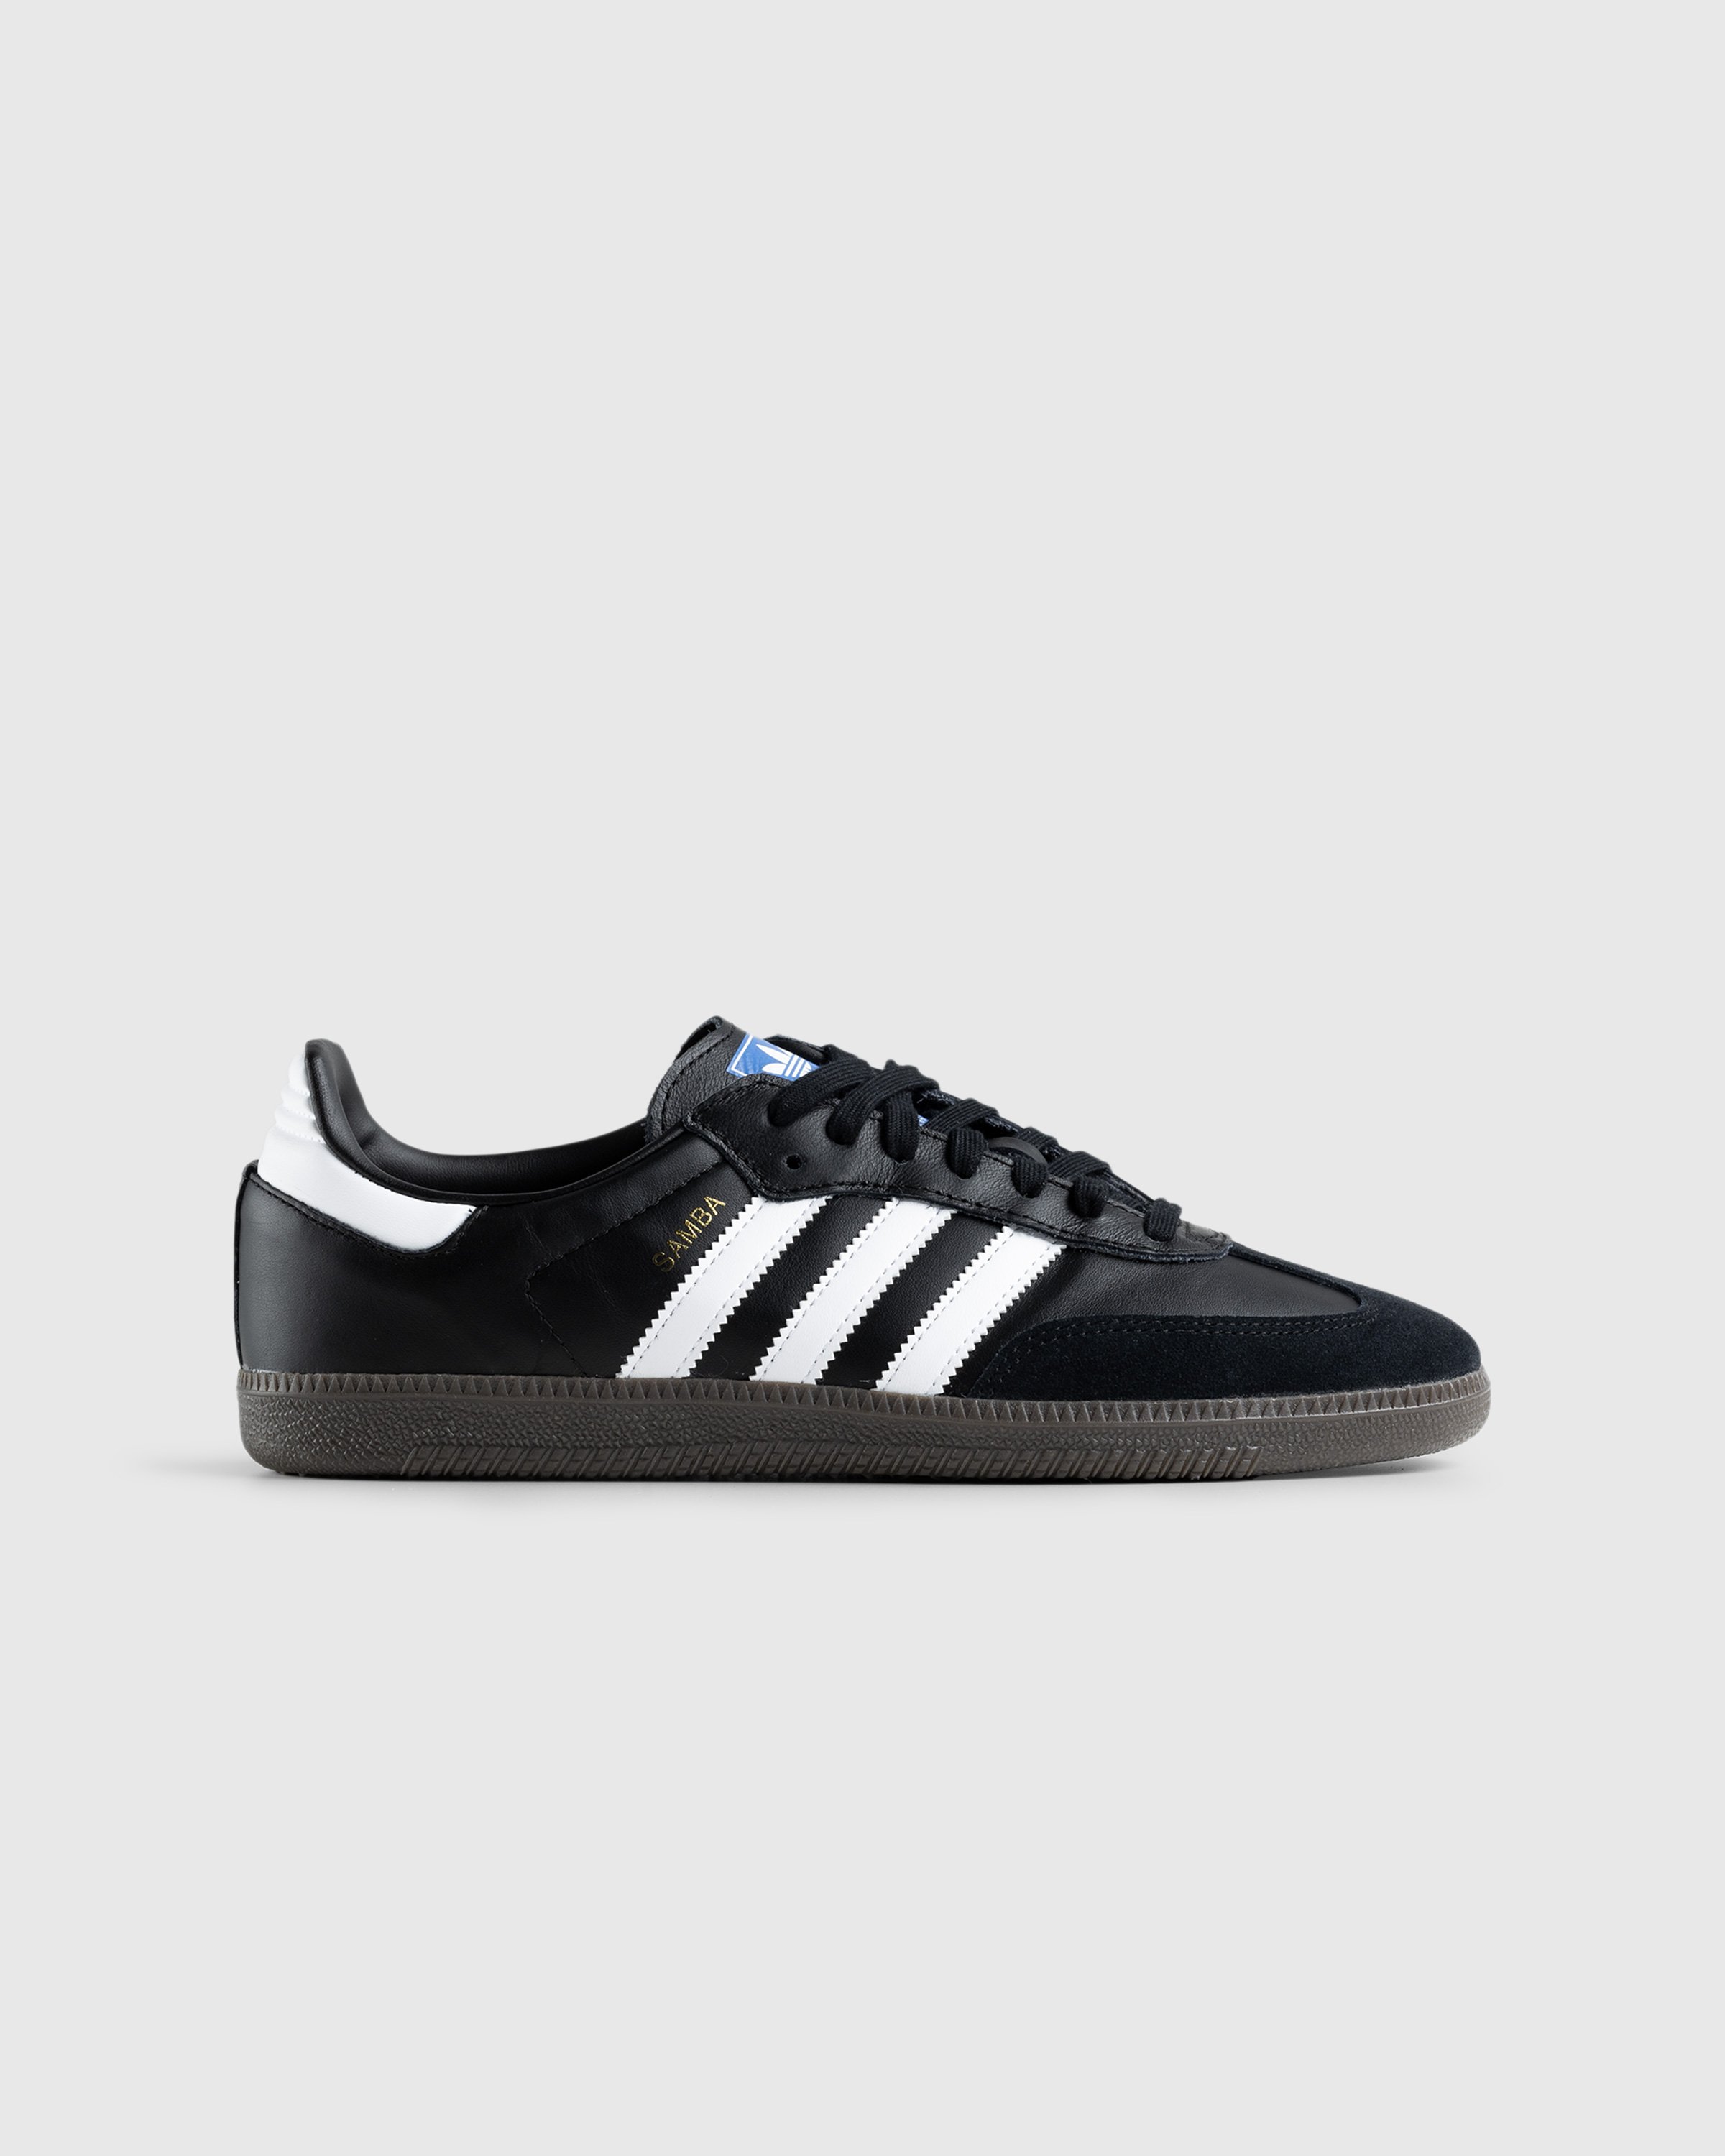 Adidas – Samba OG Black/White/Gum | Highsnobiety Shop